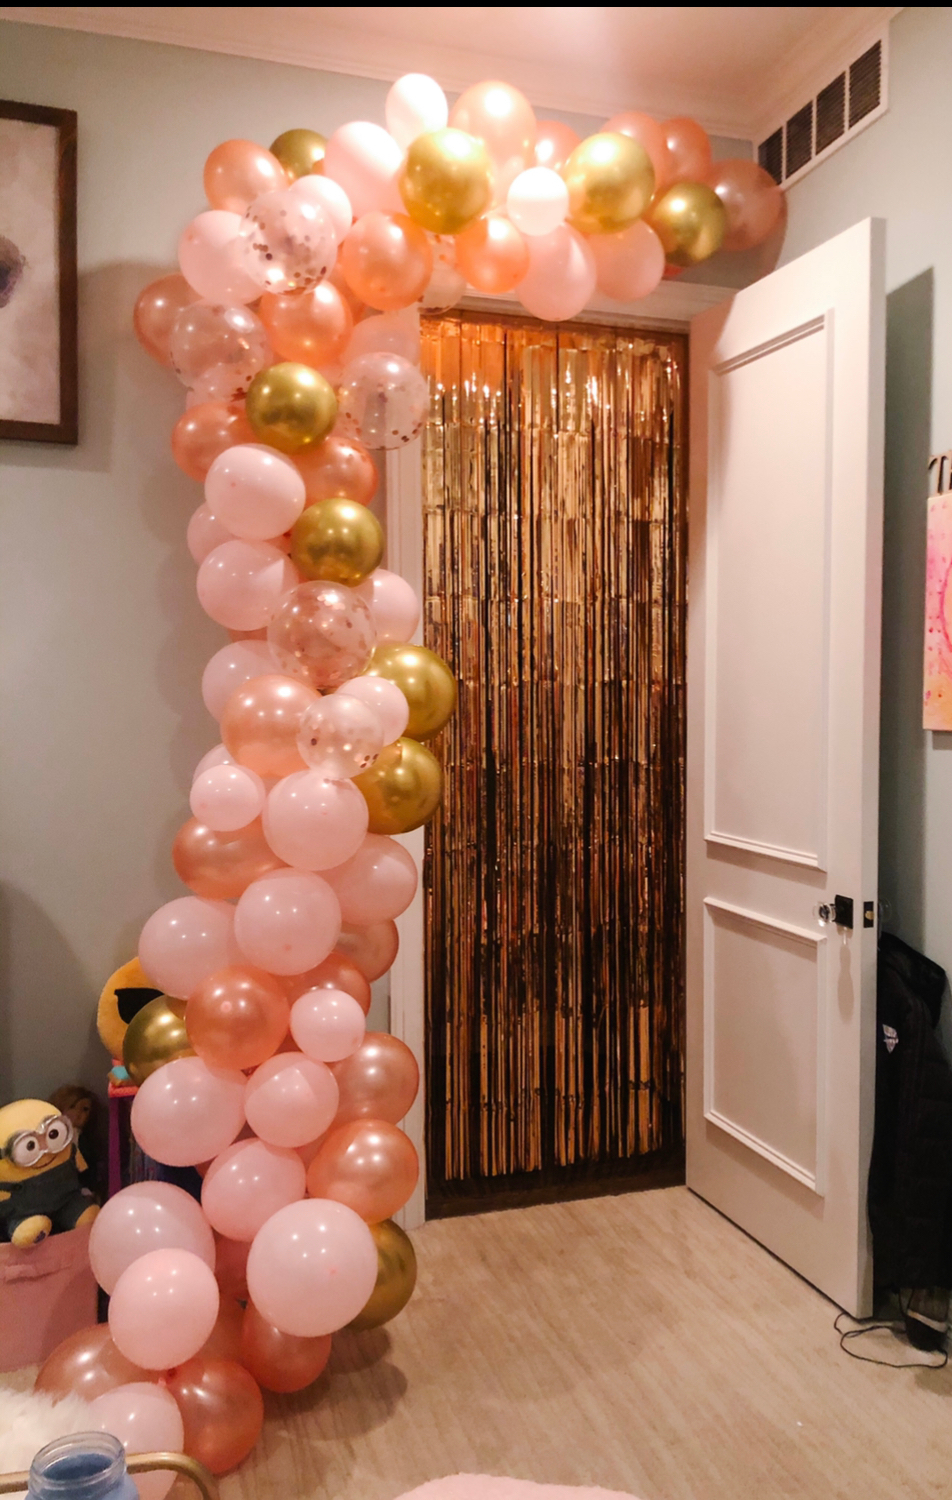 Balloon arch over door